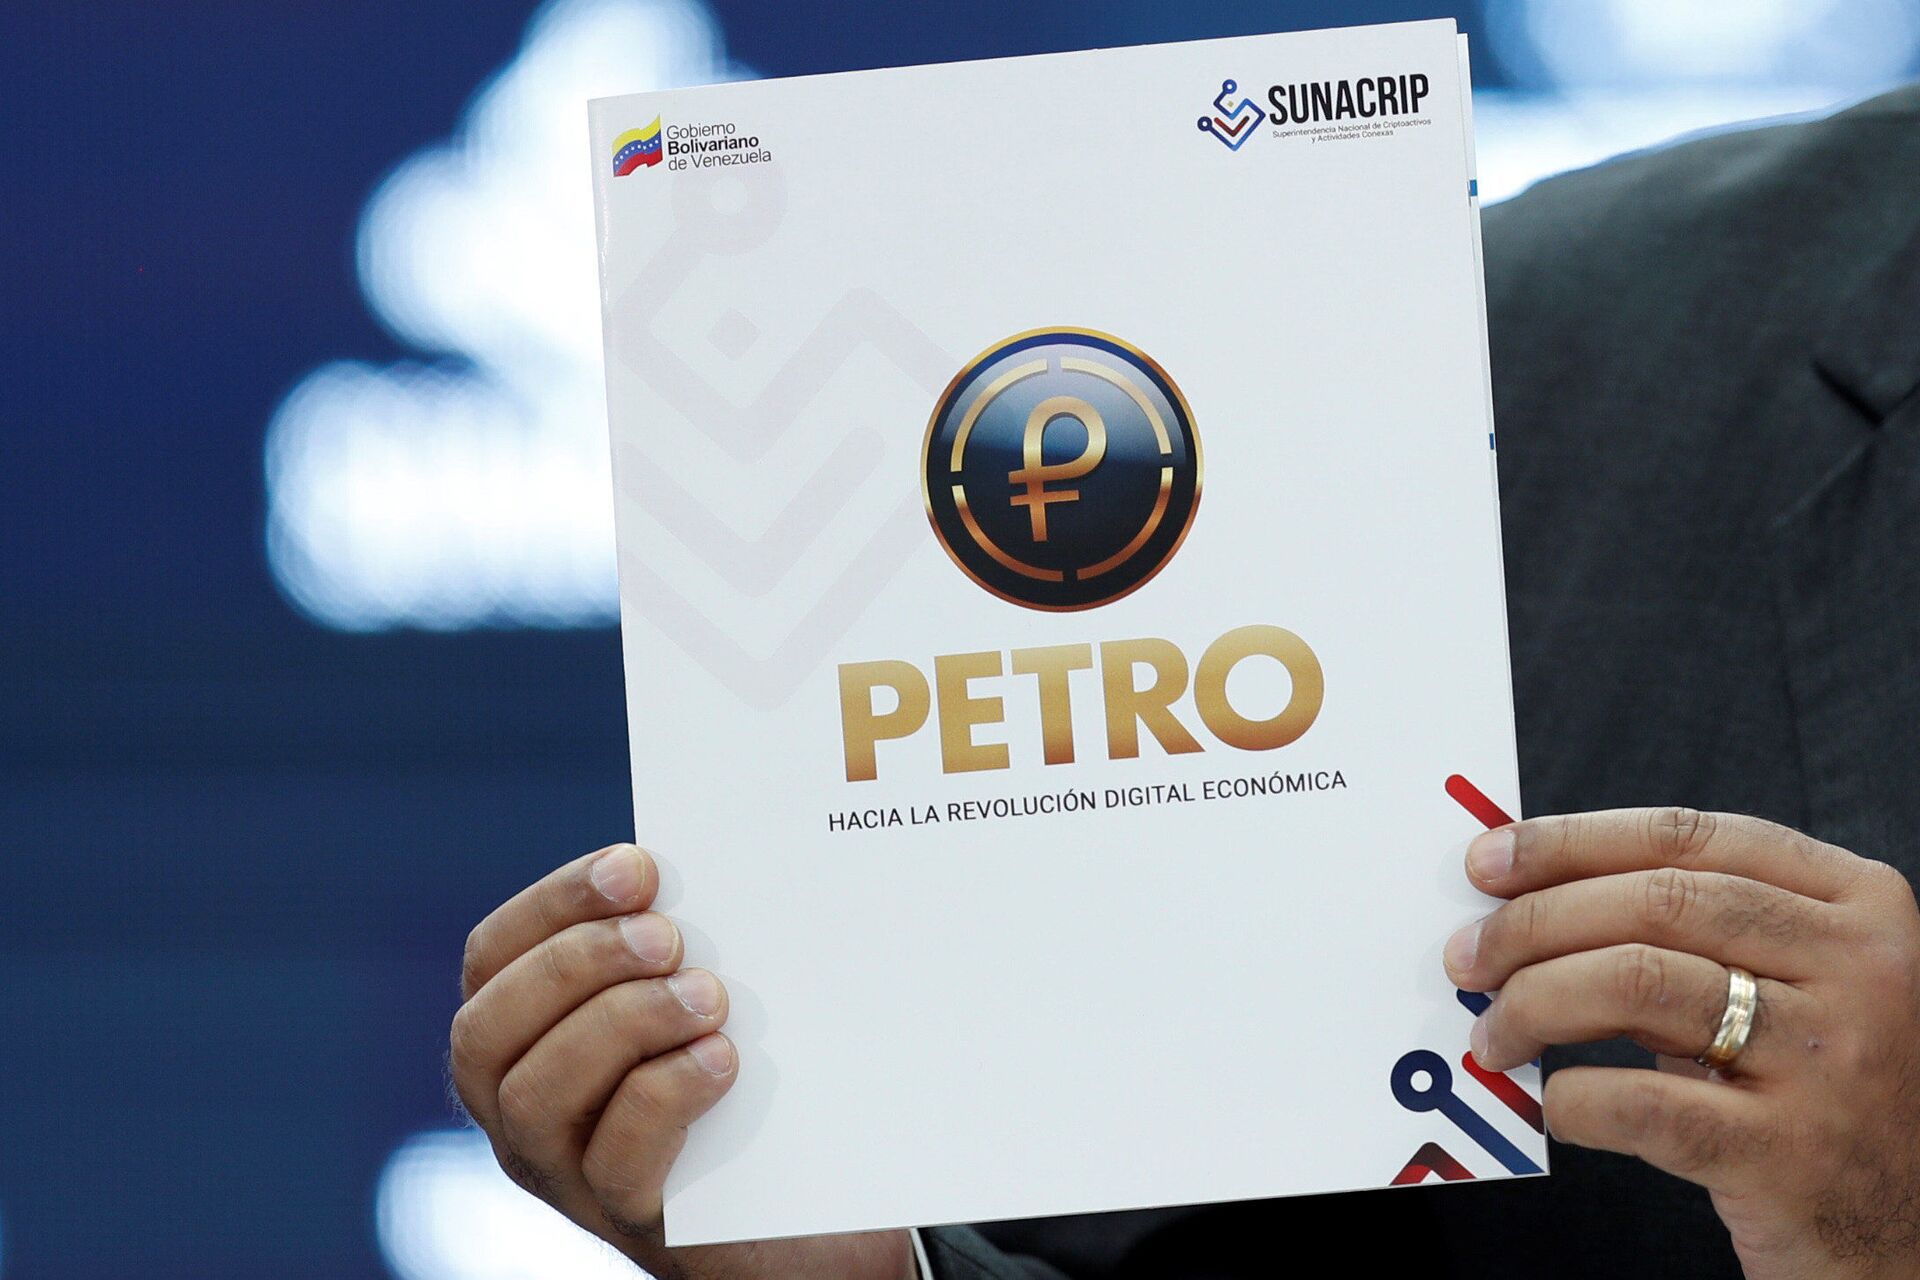 Com hiperinflação, Venezuela anuncia que vai 'petrolizar' pagamentos de benefícios sociais - Sputnik Brasil, 1920, 03.05.2021